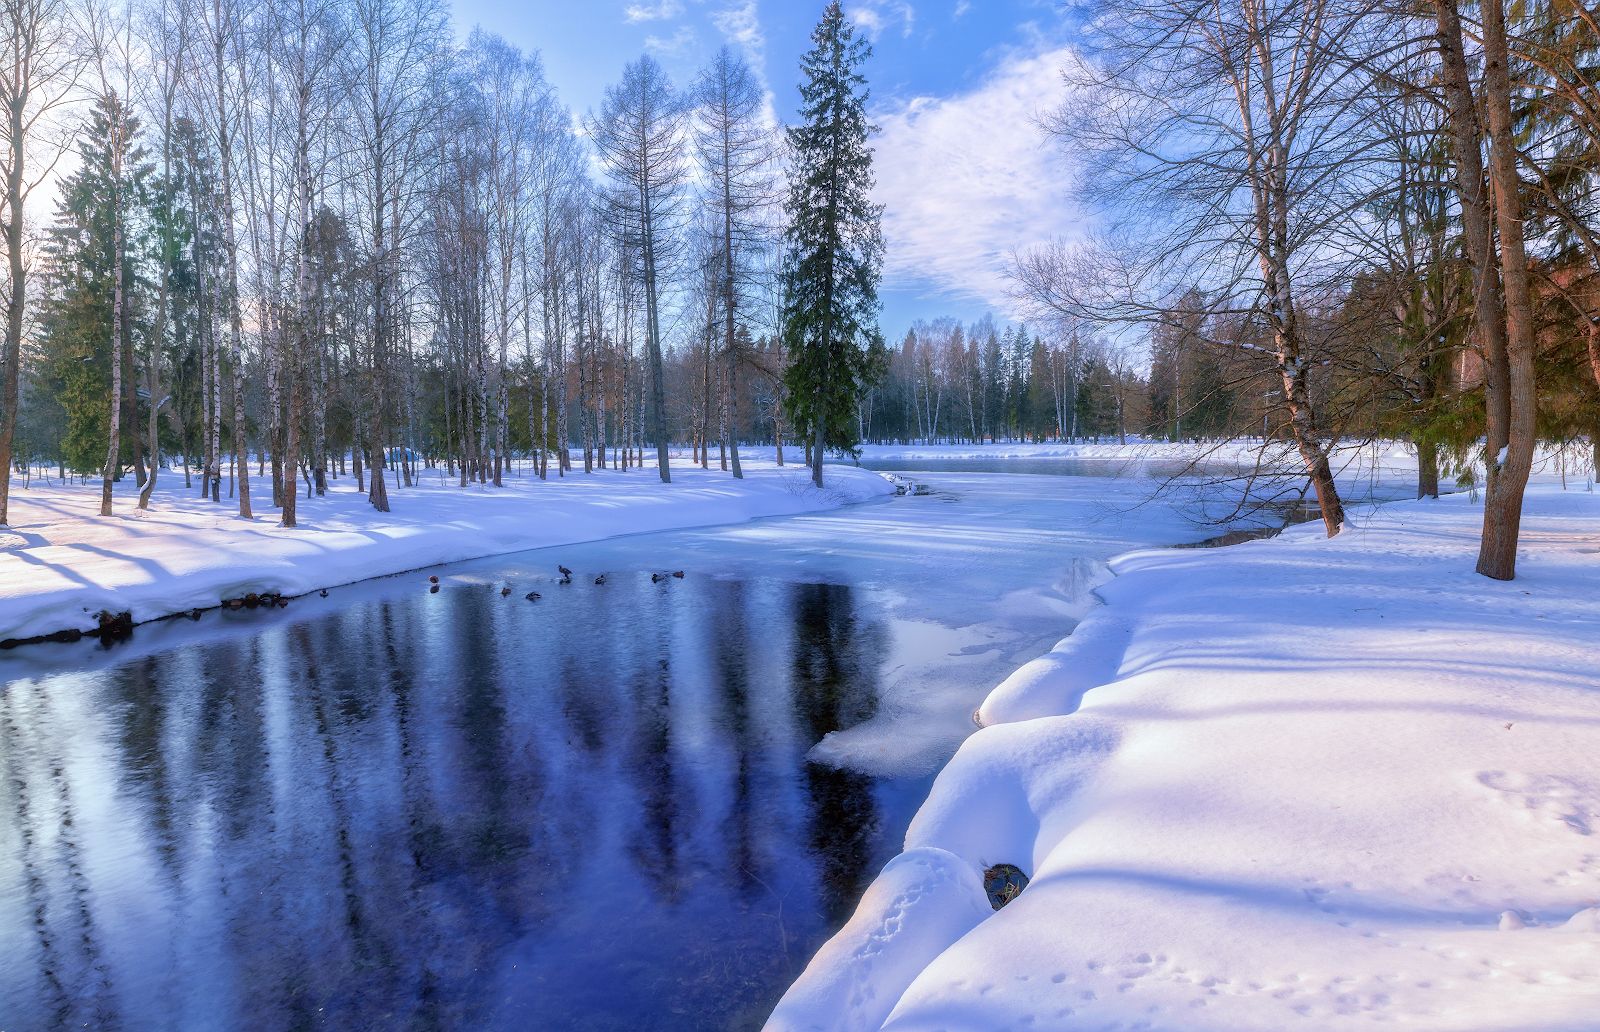 река зима снег солнце небо отражение мороз, Скороходов Константин